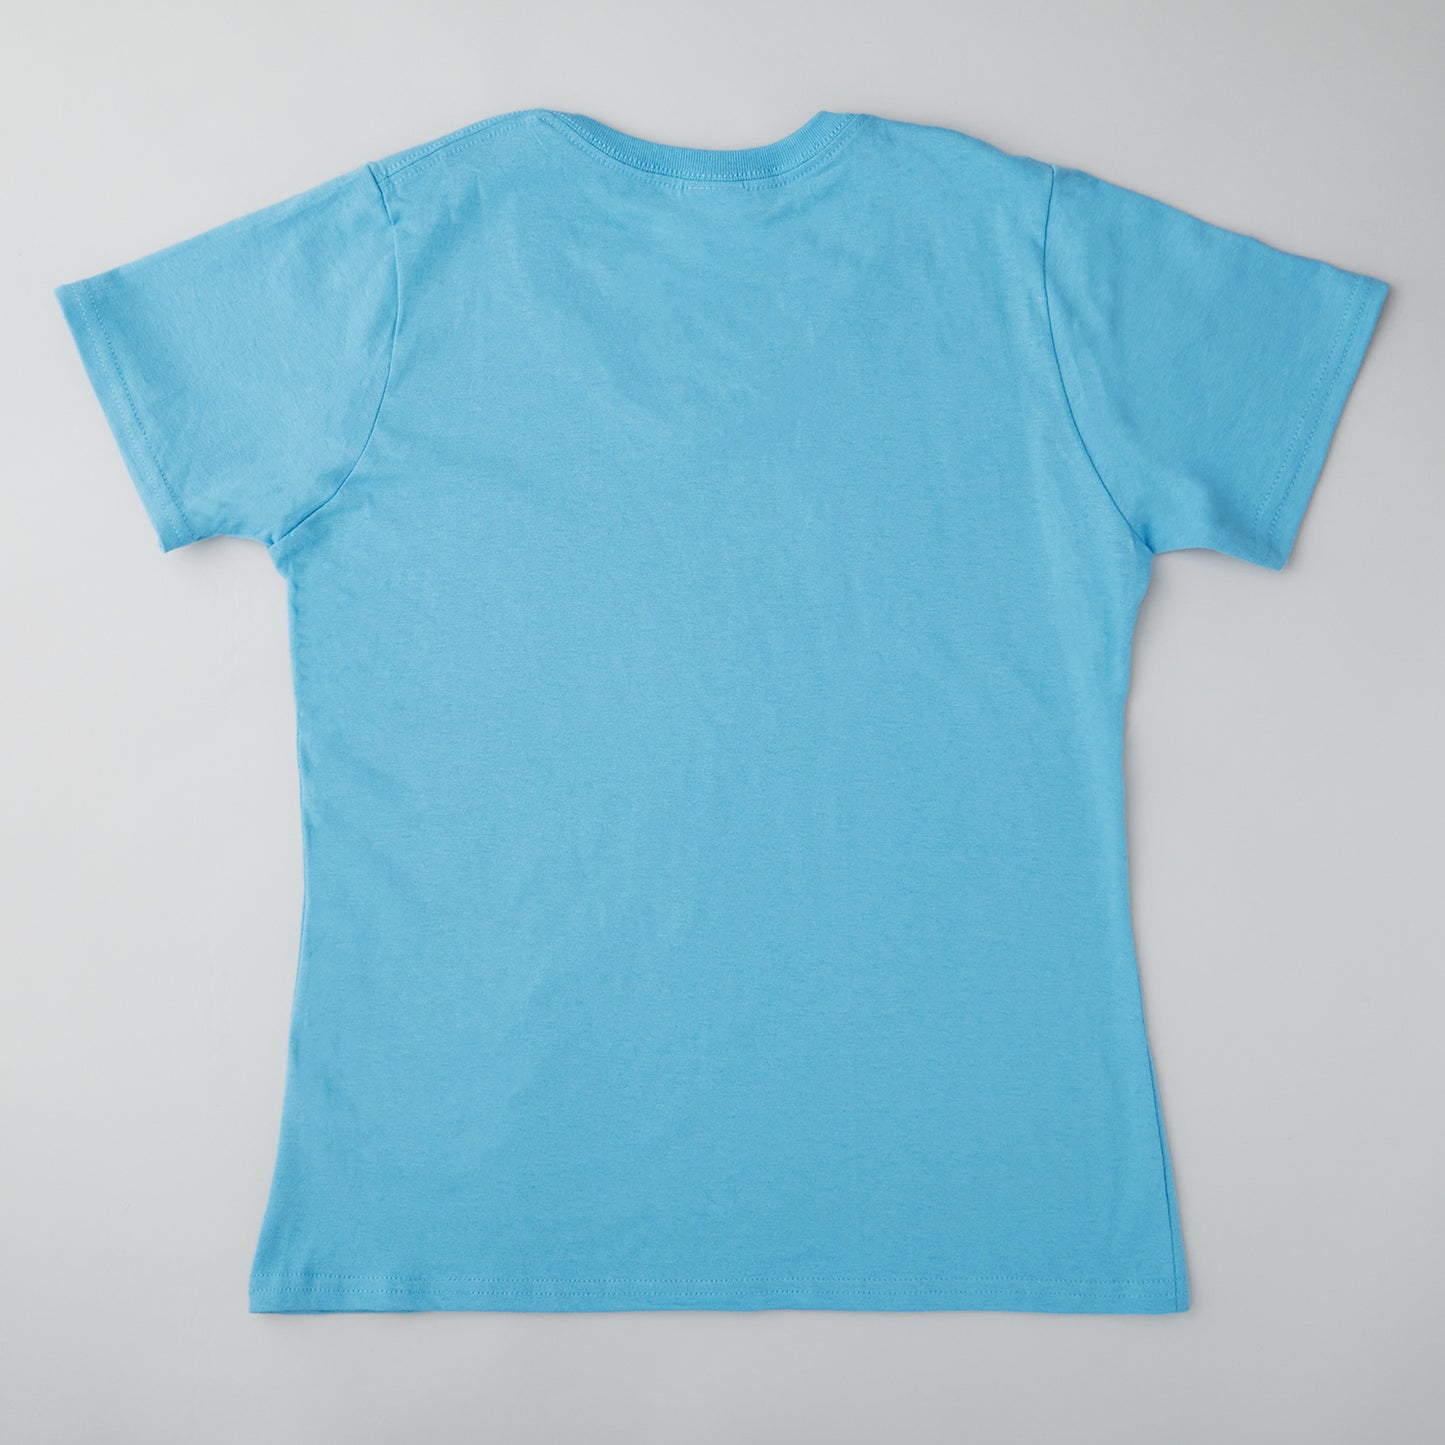 Quiltmaker T-shirt - Aquatic Blue S Alternative View #1